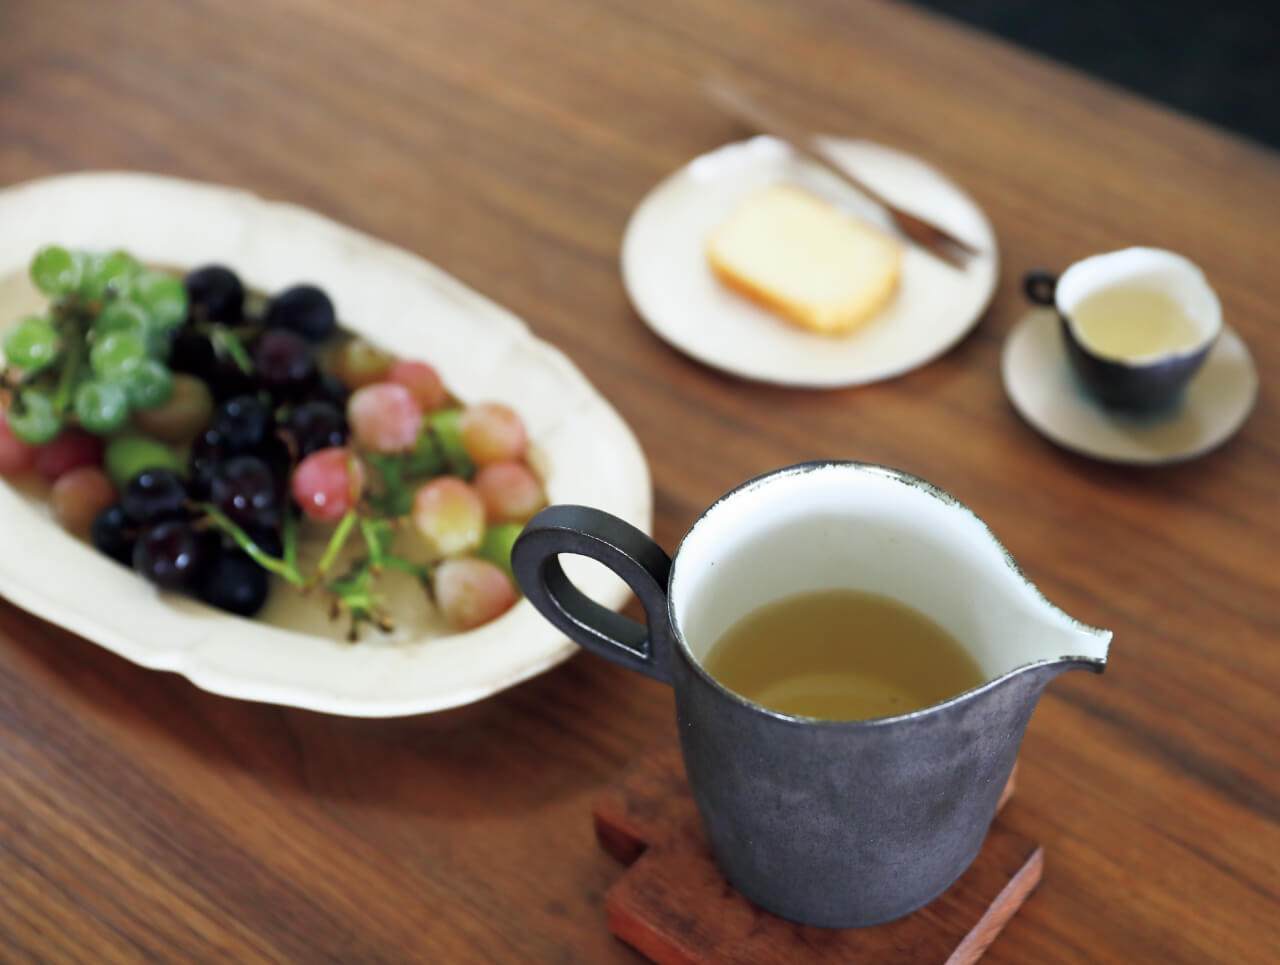 「人をもてなすのが日常」という石村さん。作家ものやアンティークの器を自在に組み合わせ、手慣れた雰囲気で手料理をふるまう。駆けつけの一杯、野菜づくしの食事、食後のデザート。豊かな食卓の風景が広がる。